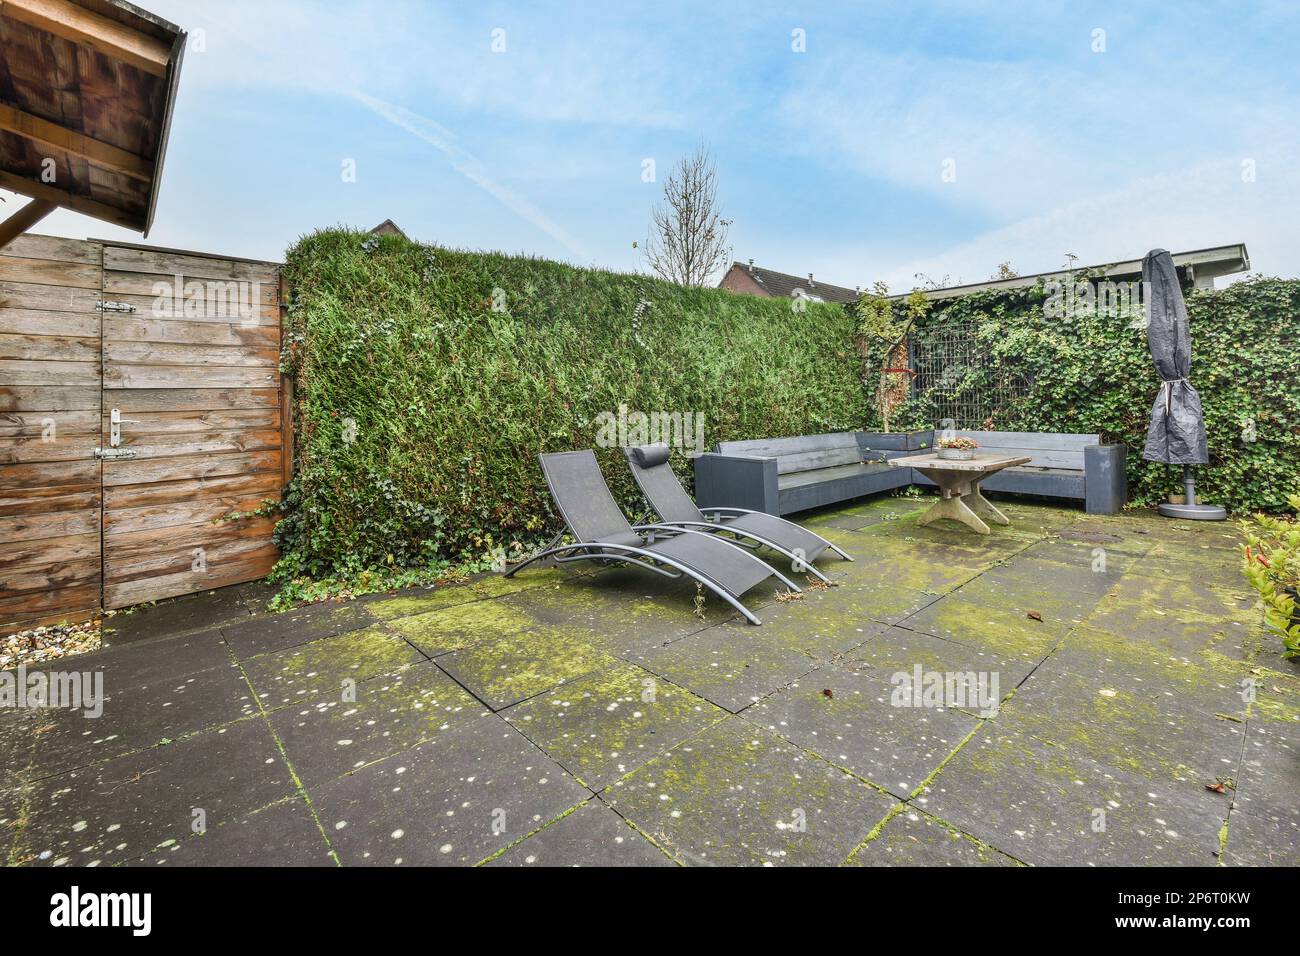 Amsterdam, pays-Bas - 10 avril, 2021: Une cour avec quelques chaises et des plantes sur le sol devant un mur de jardin clôturé en bois Banque D'Images